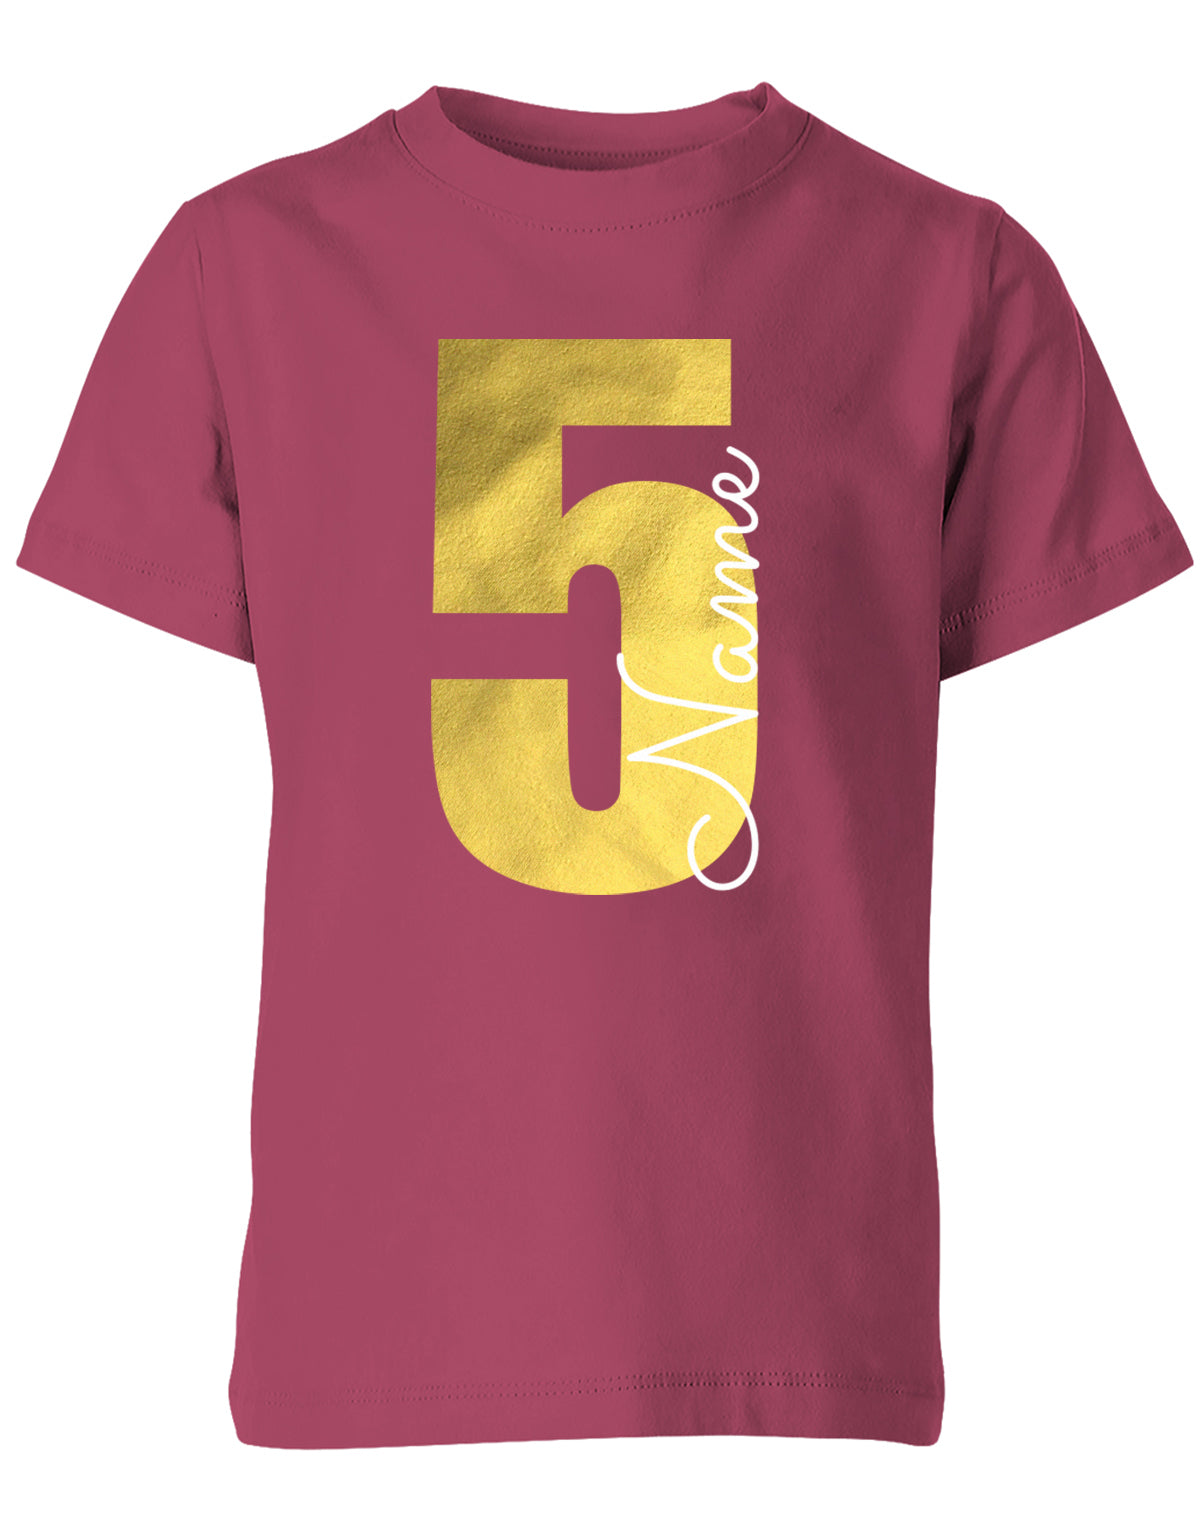 Geburtstags T-Shirt 5 Jahre Junge und Mädchen Goldene 5 mit Namen Sorbet